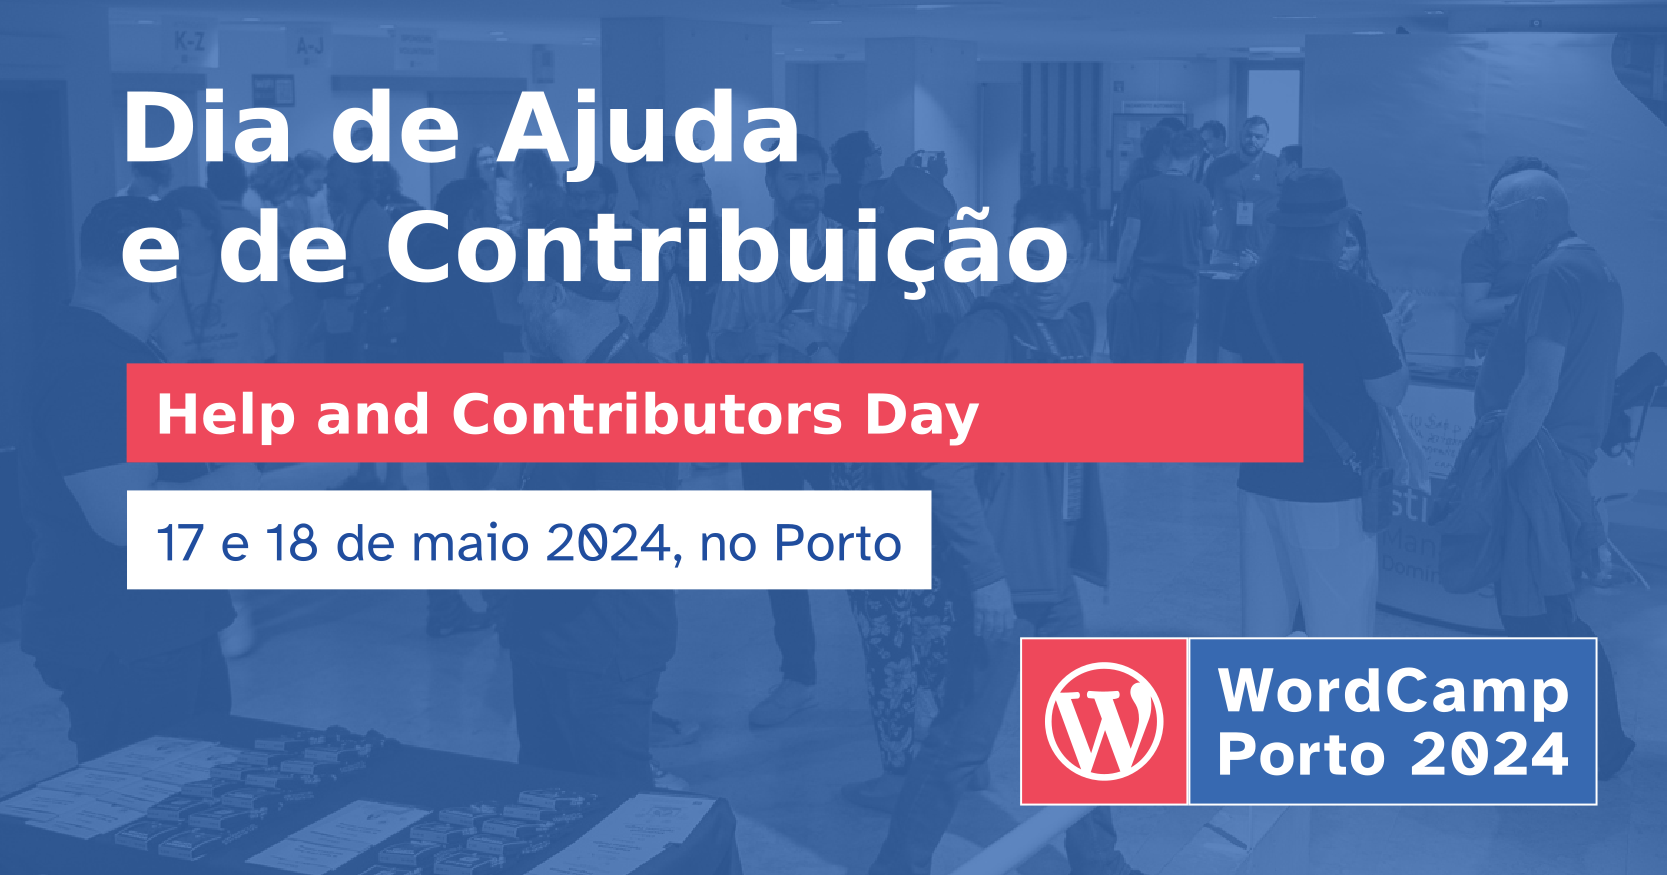 Participa no Novo Espaço de Ajuda do WordCamp Porto 2024